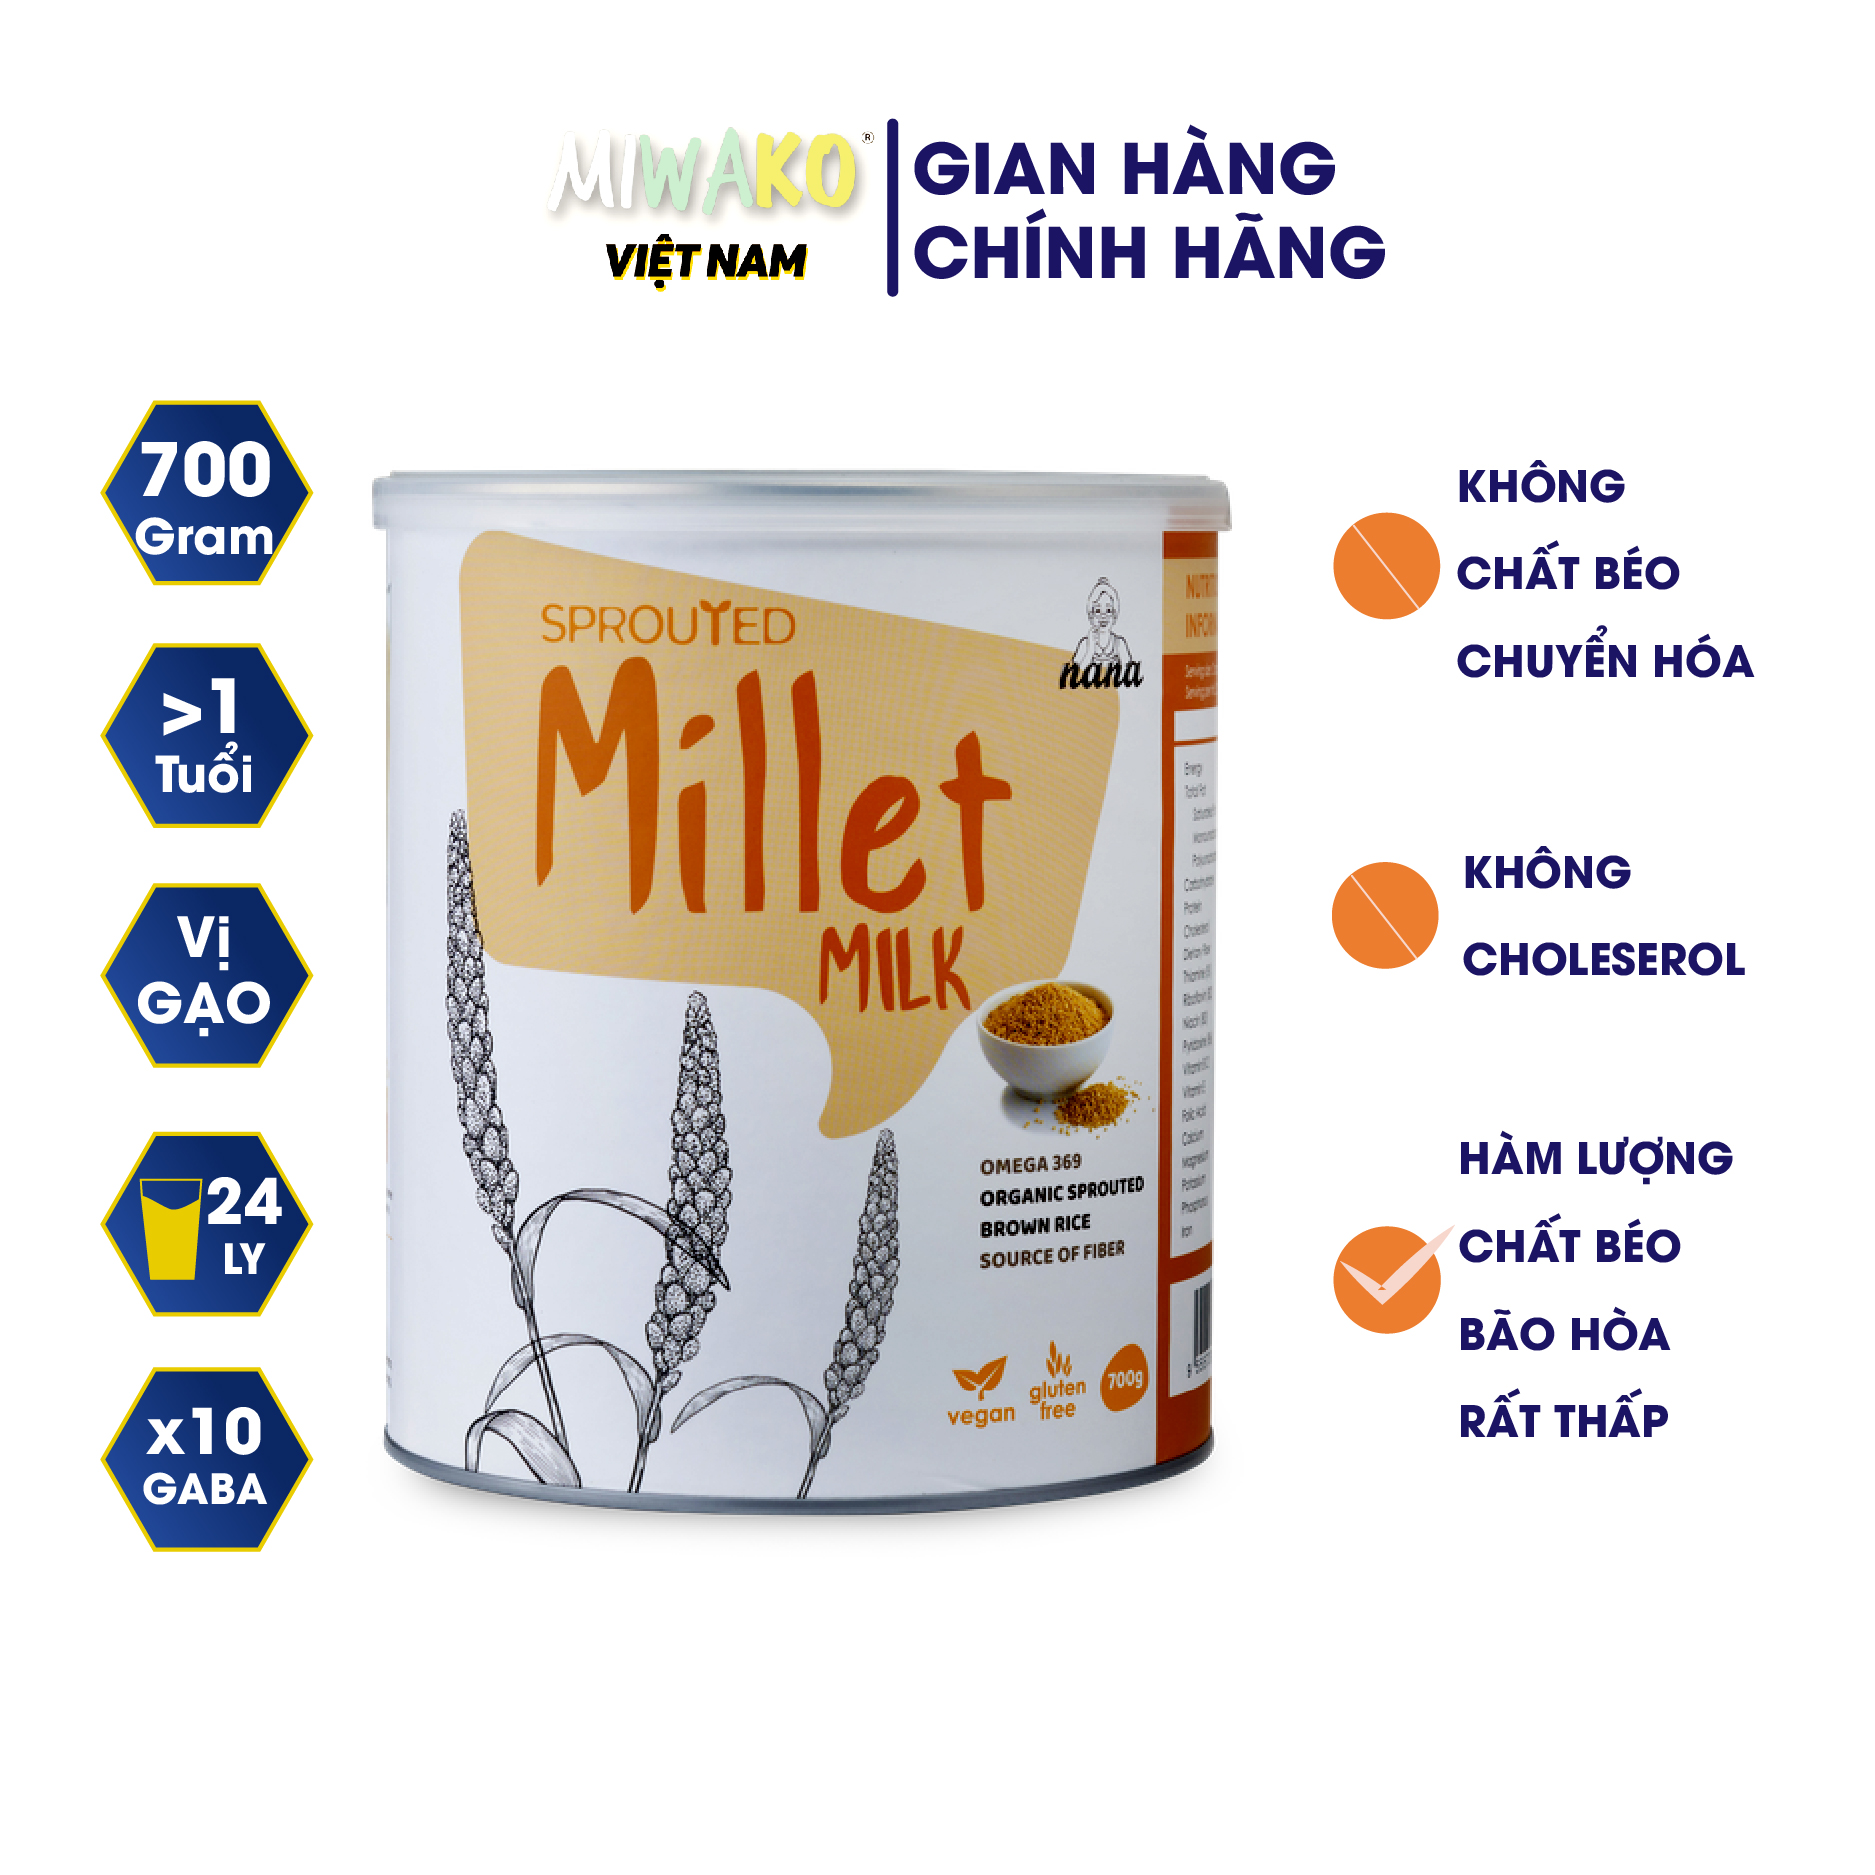 Sữa hạt hữu cơ 700g millet 100% organic nhập khẩu chính hãng từ malaysia cho cả gia đình - miwako official store 7